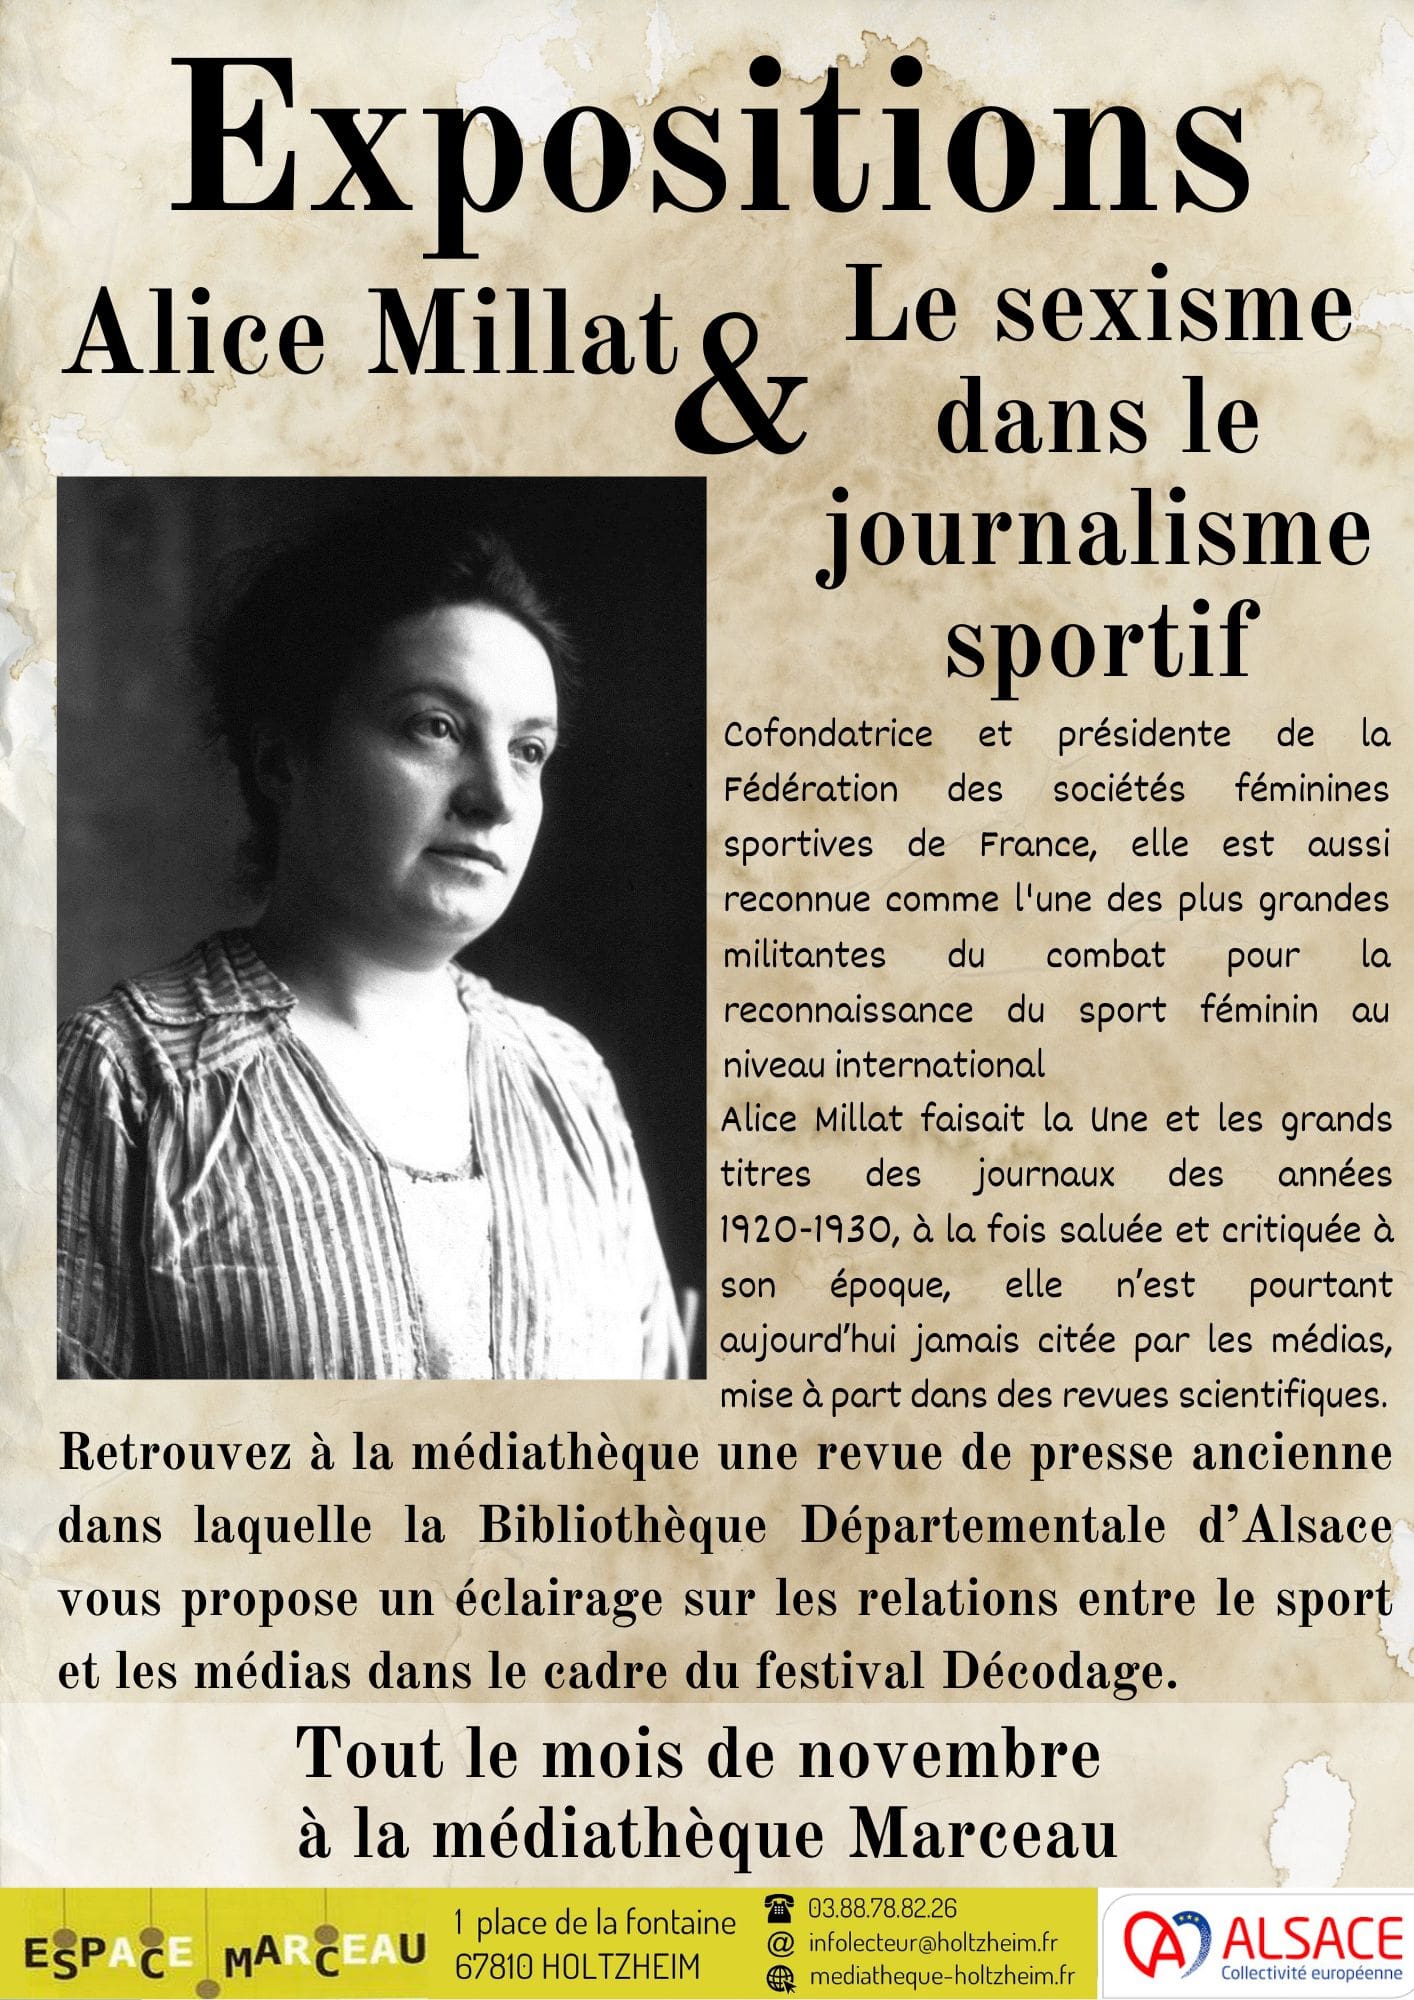 Affiche de l'exposition Alice Millat avec une rapide biographie de cette sportive du 20ème siècle puis la mention "Tout le mois de novembre à la médiathèque Marceau"